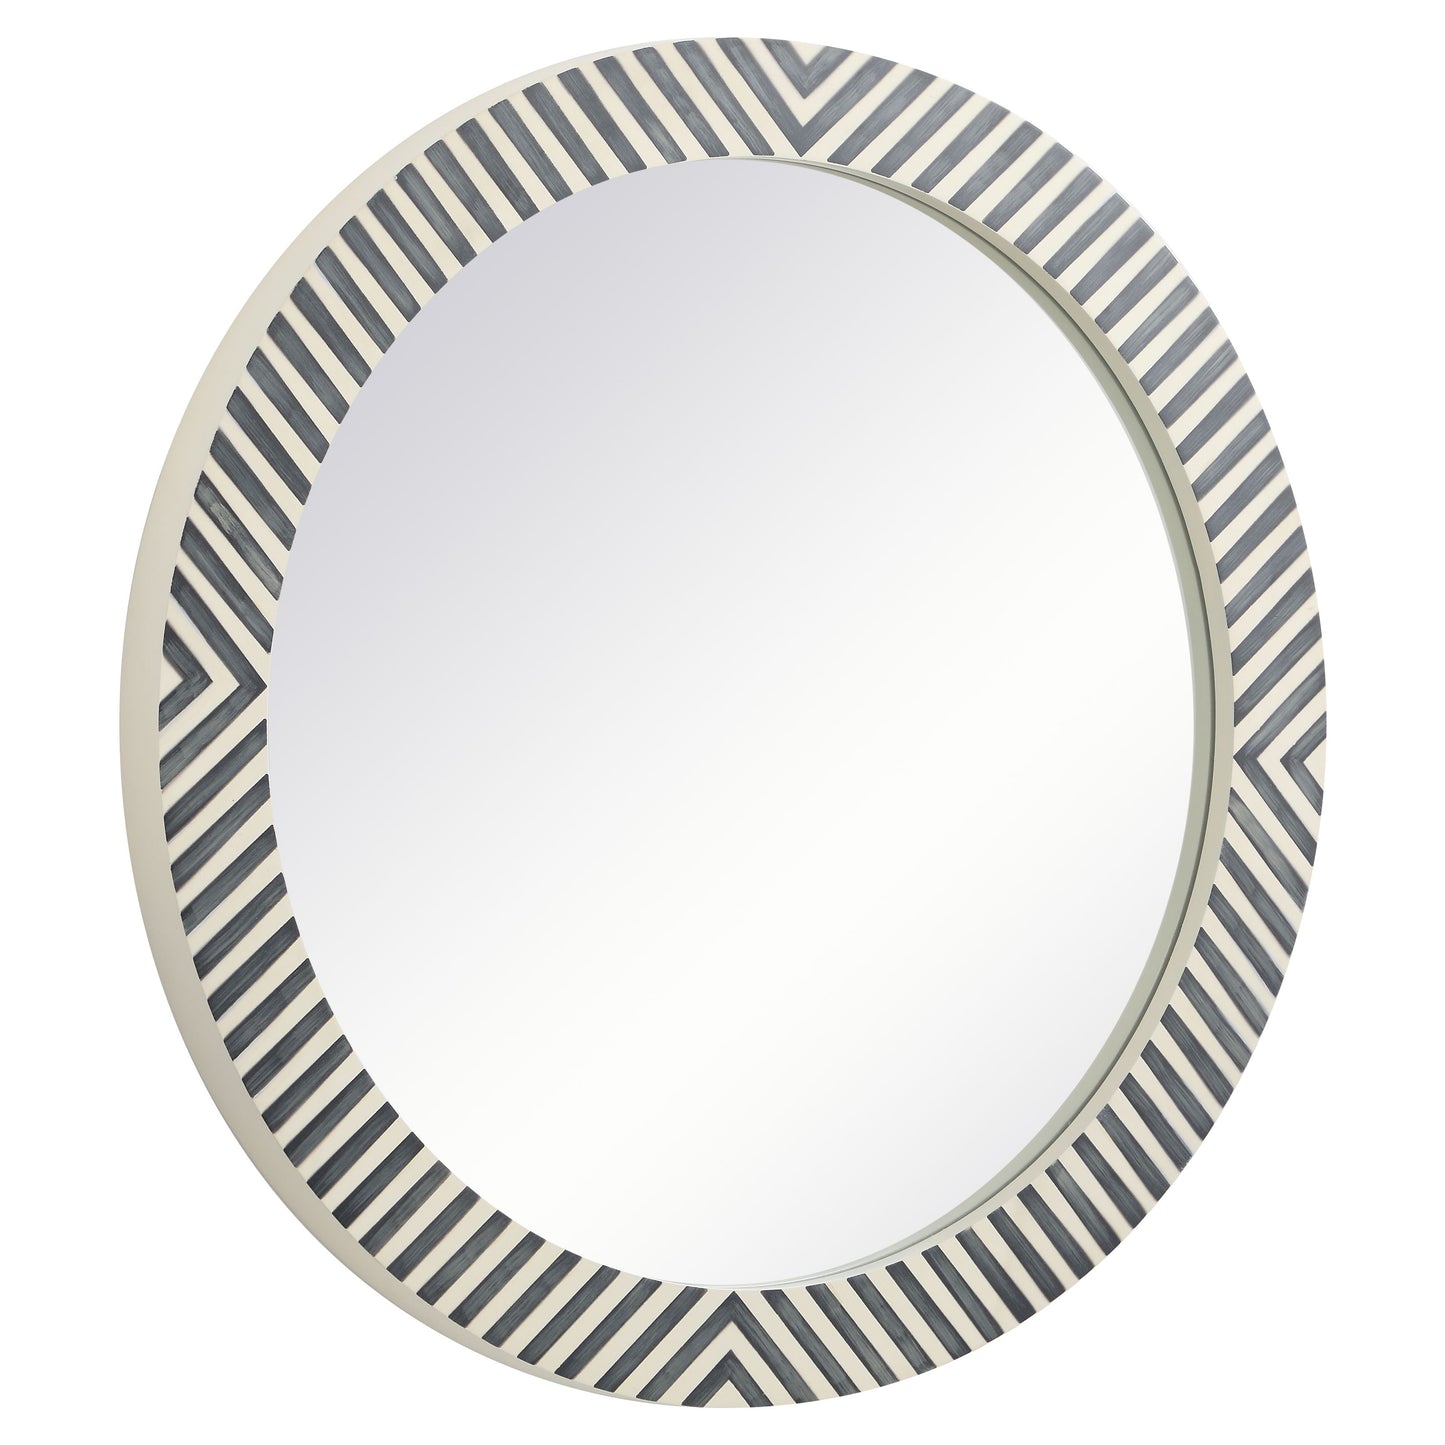 MR53232 Oullette 32" x 32" Round Mirror in Chevron Frame